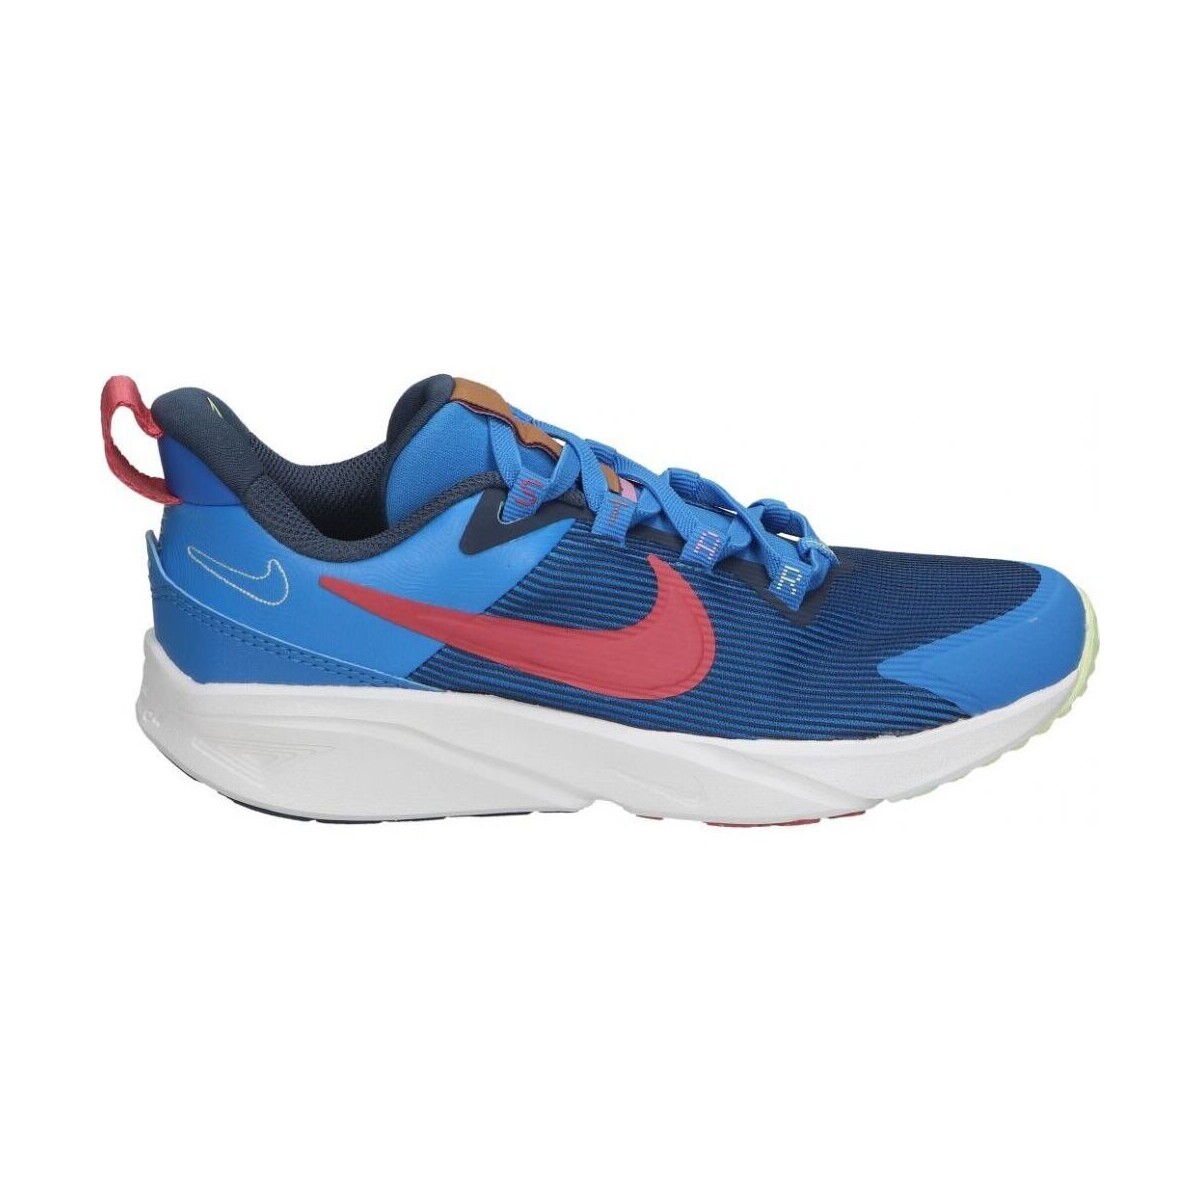 Boty Děti Módní tenisky Nike DZ4491-400 Modrá